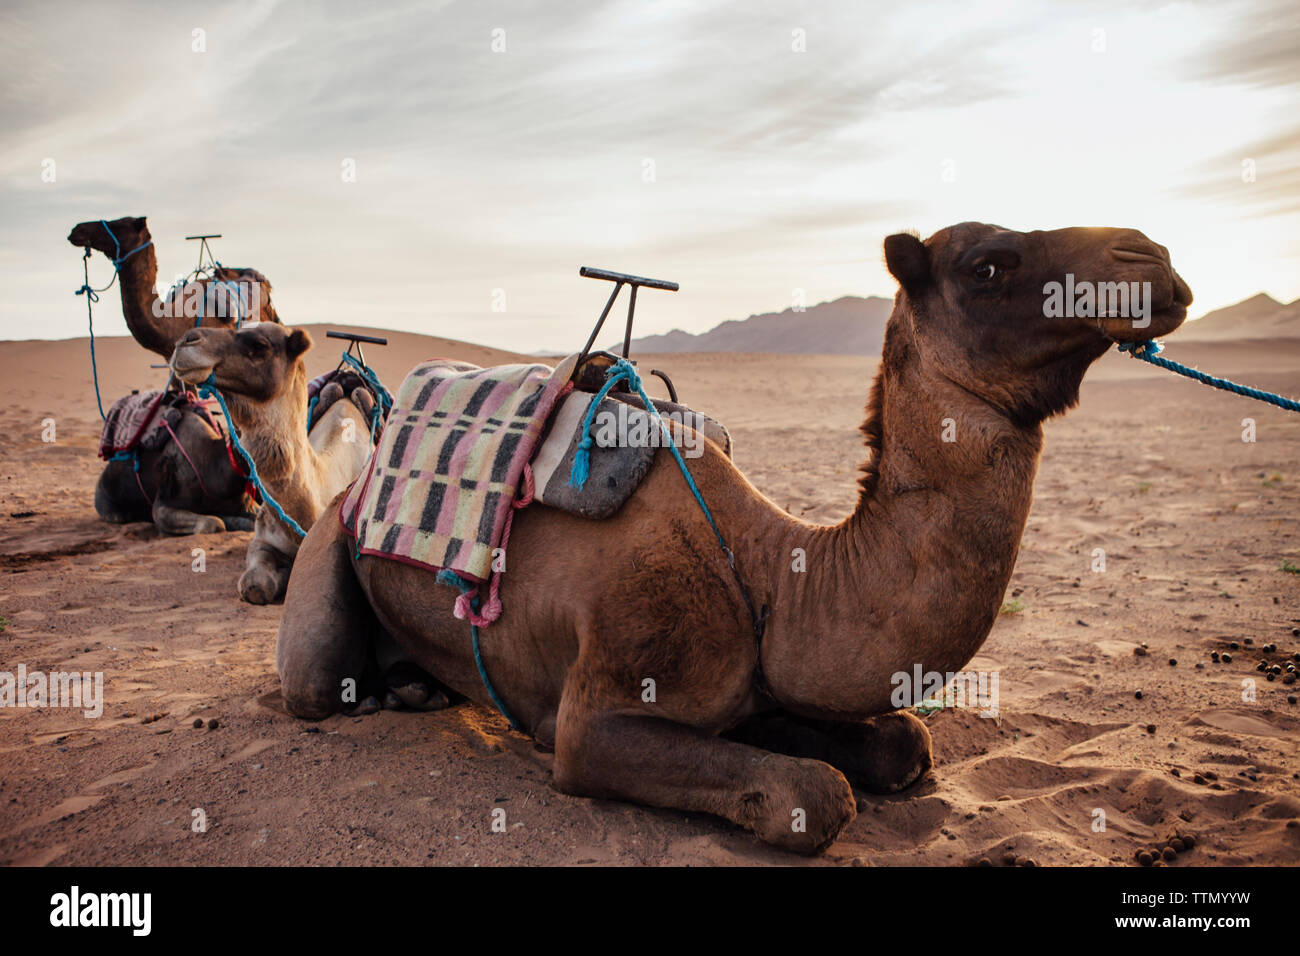 Les chameaux se détendre sur le sable dans le desert against cloudy sky Banque D'Images